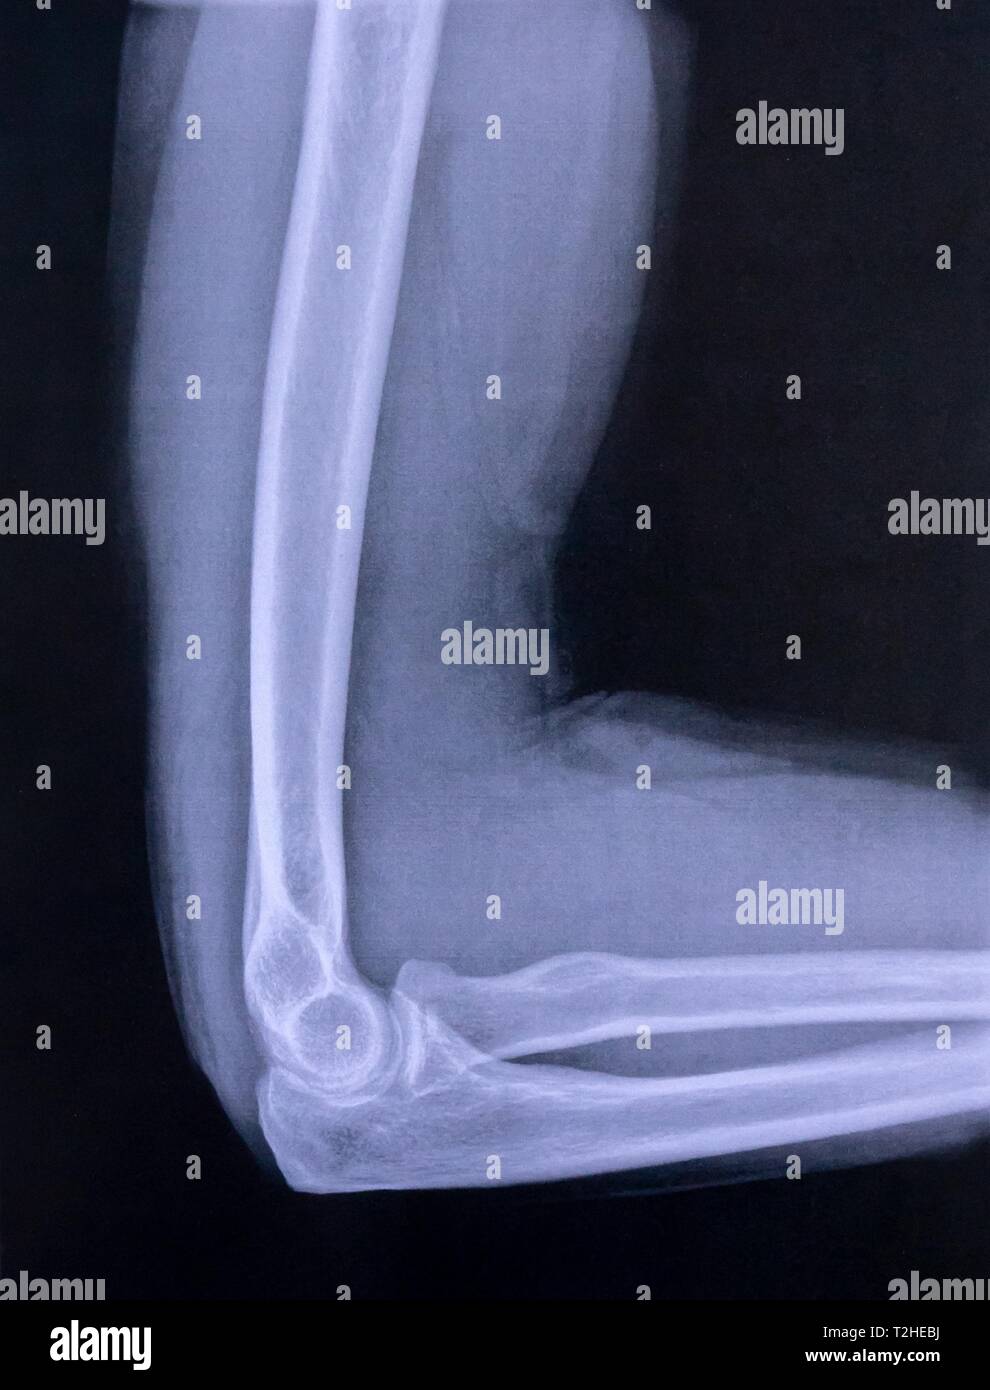 Immagine a raggi X del gomito e la parte superiore del braccio, Germania Foto Stock